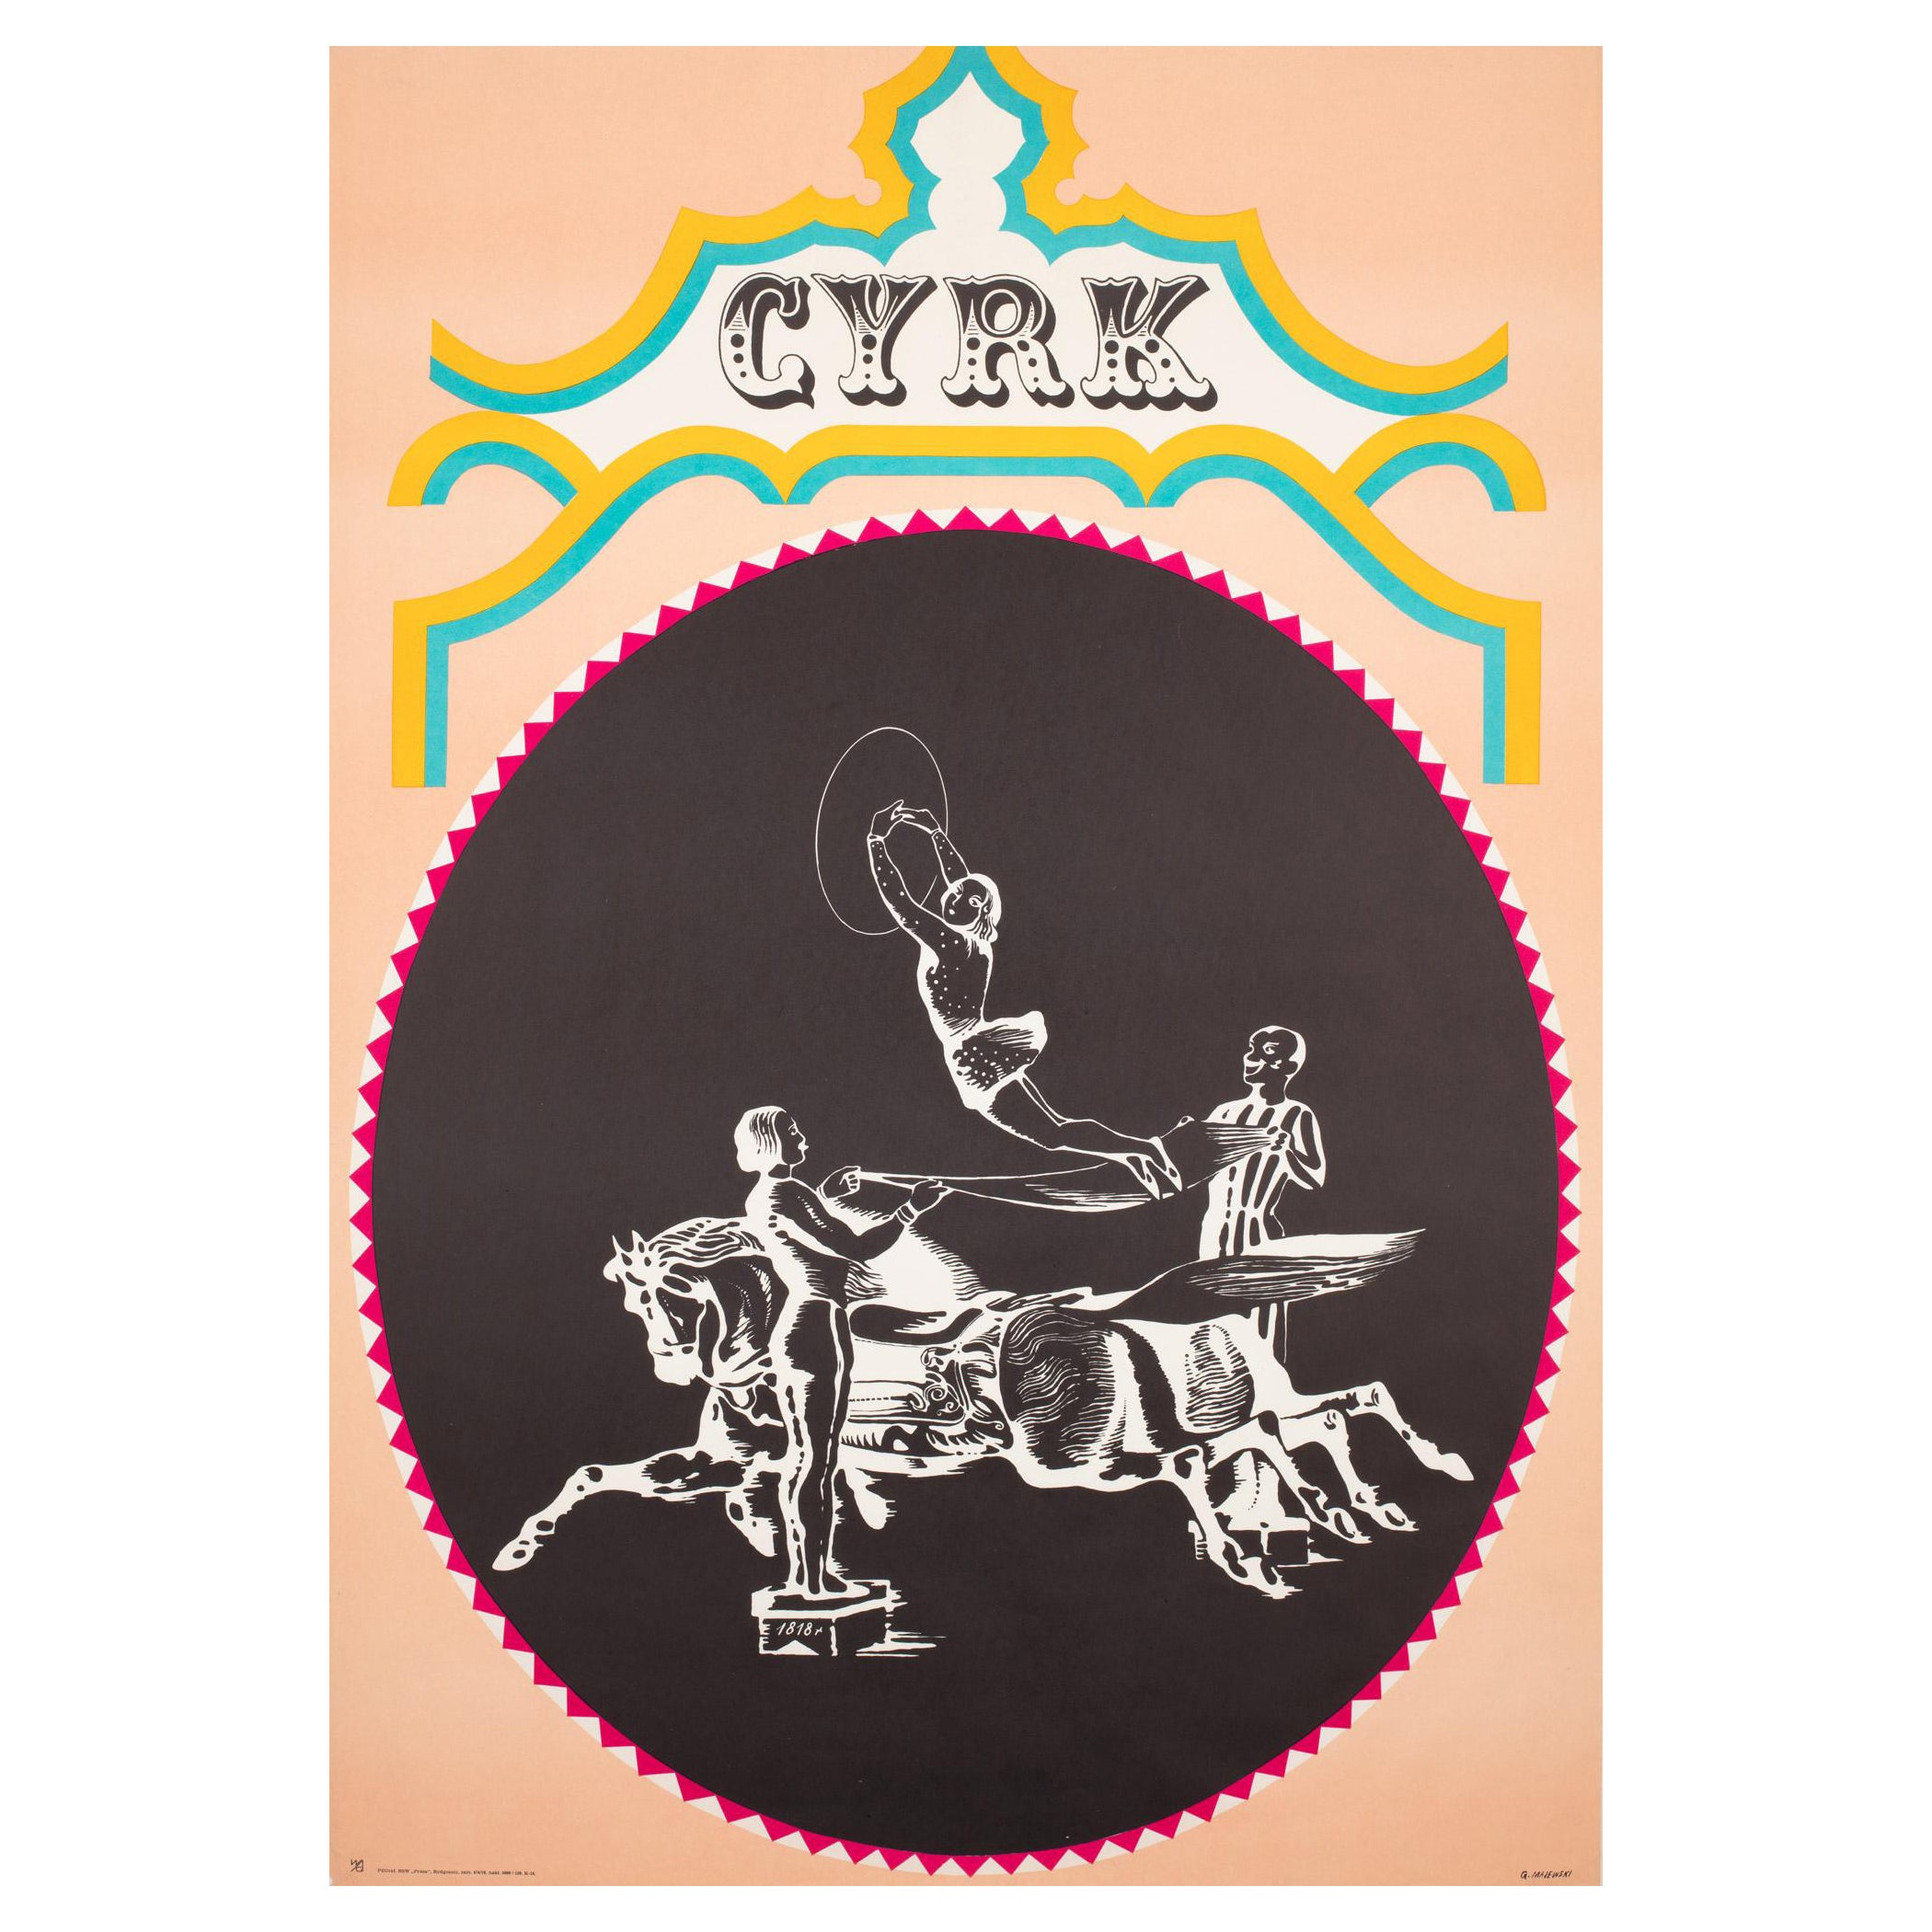 Cyrk Performing on Horseback, polnisches Zirkusplakat, Majewski, 1970